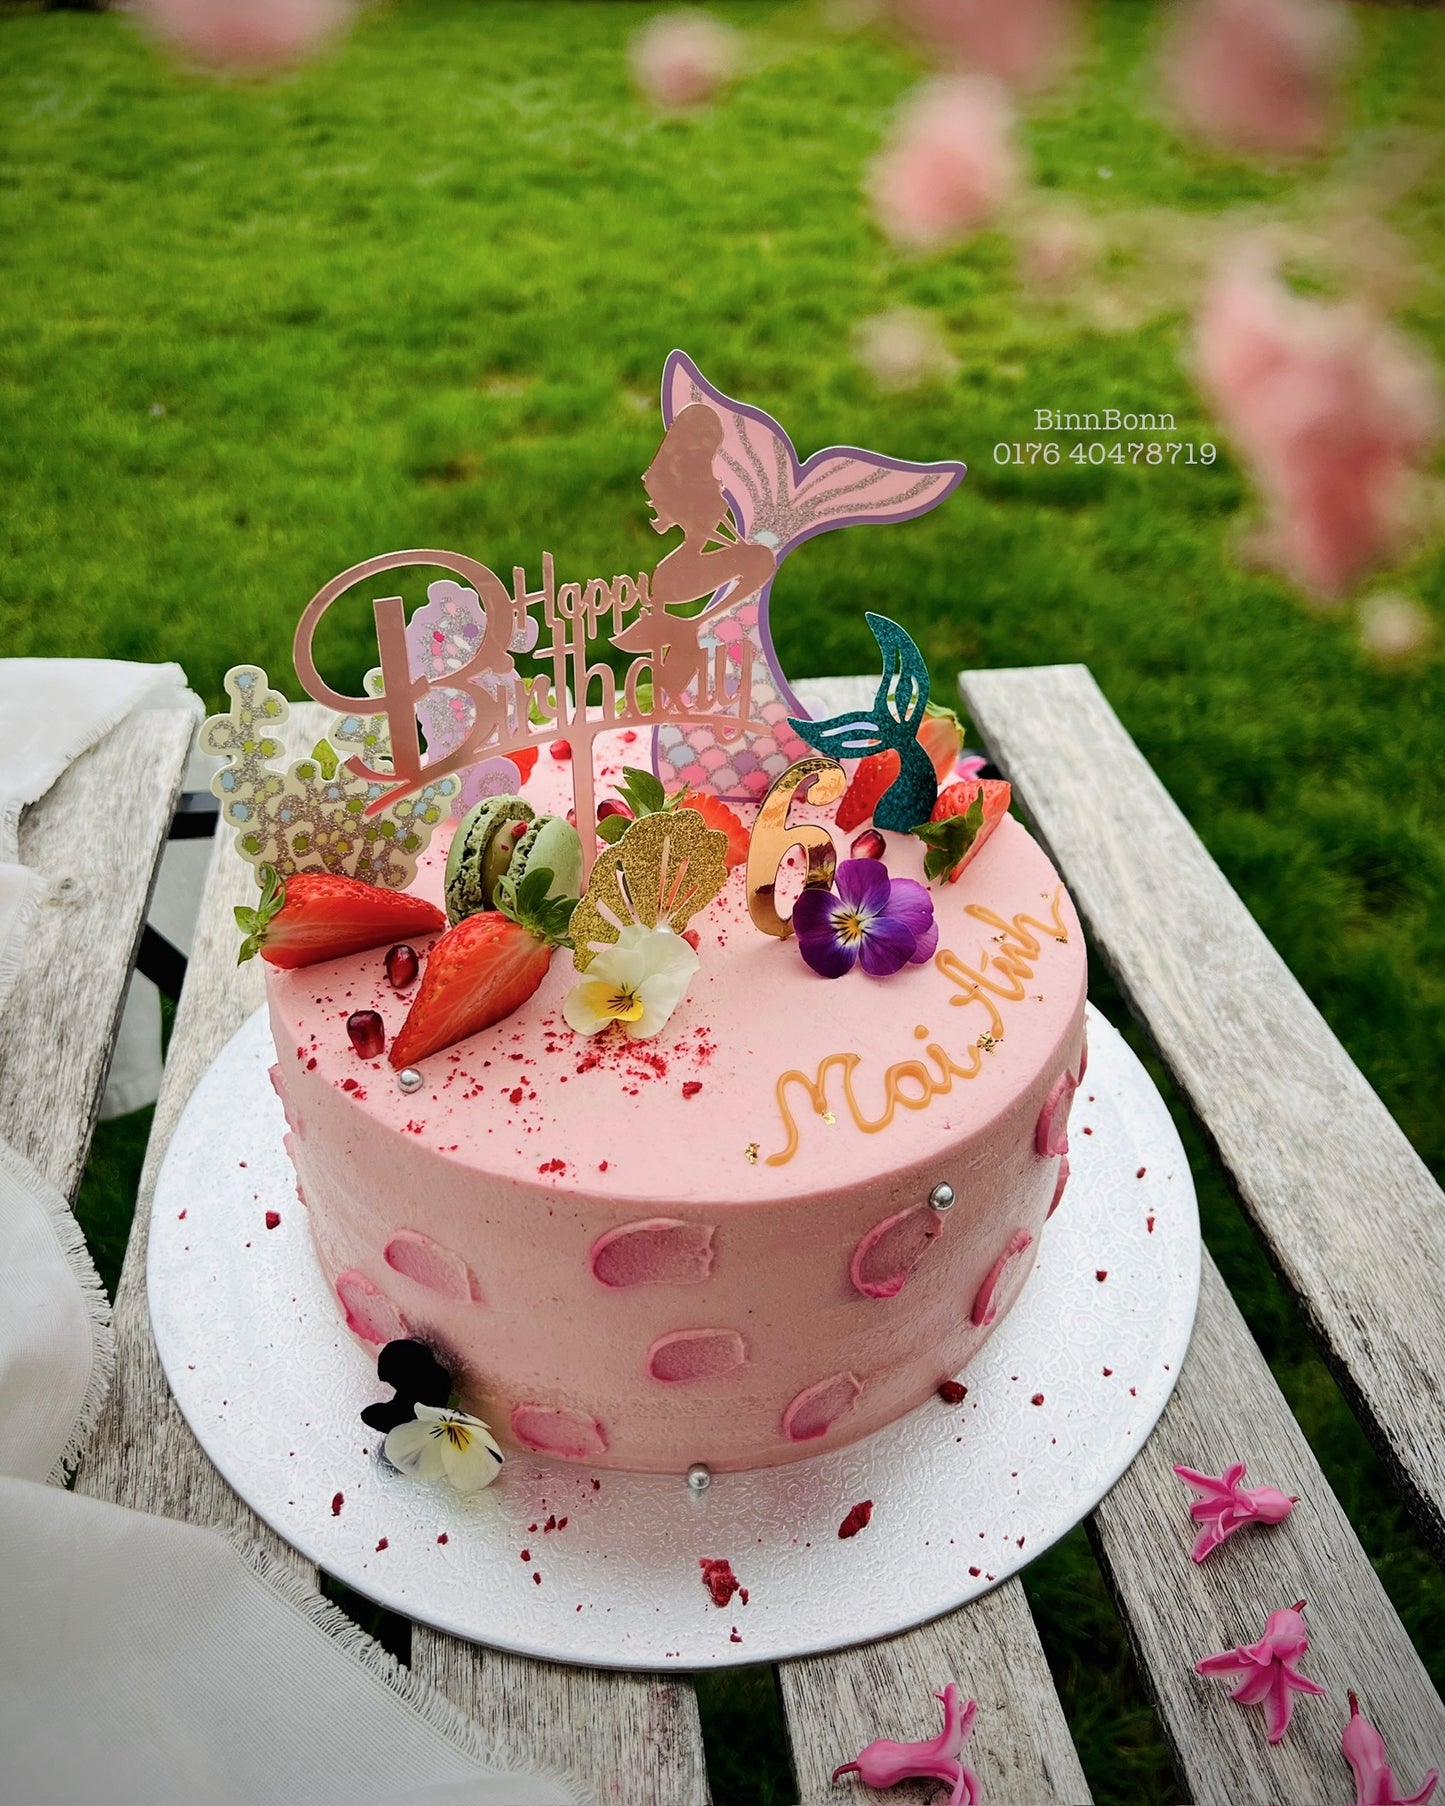 12. Torte "Pink Mermaid" zum Kindergeburtstag gefüllt mit frischen Beeren 22 cm